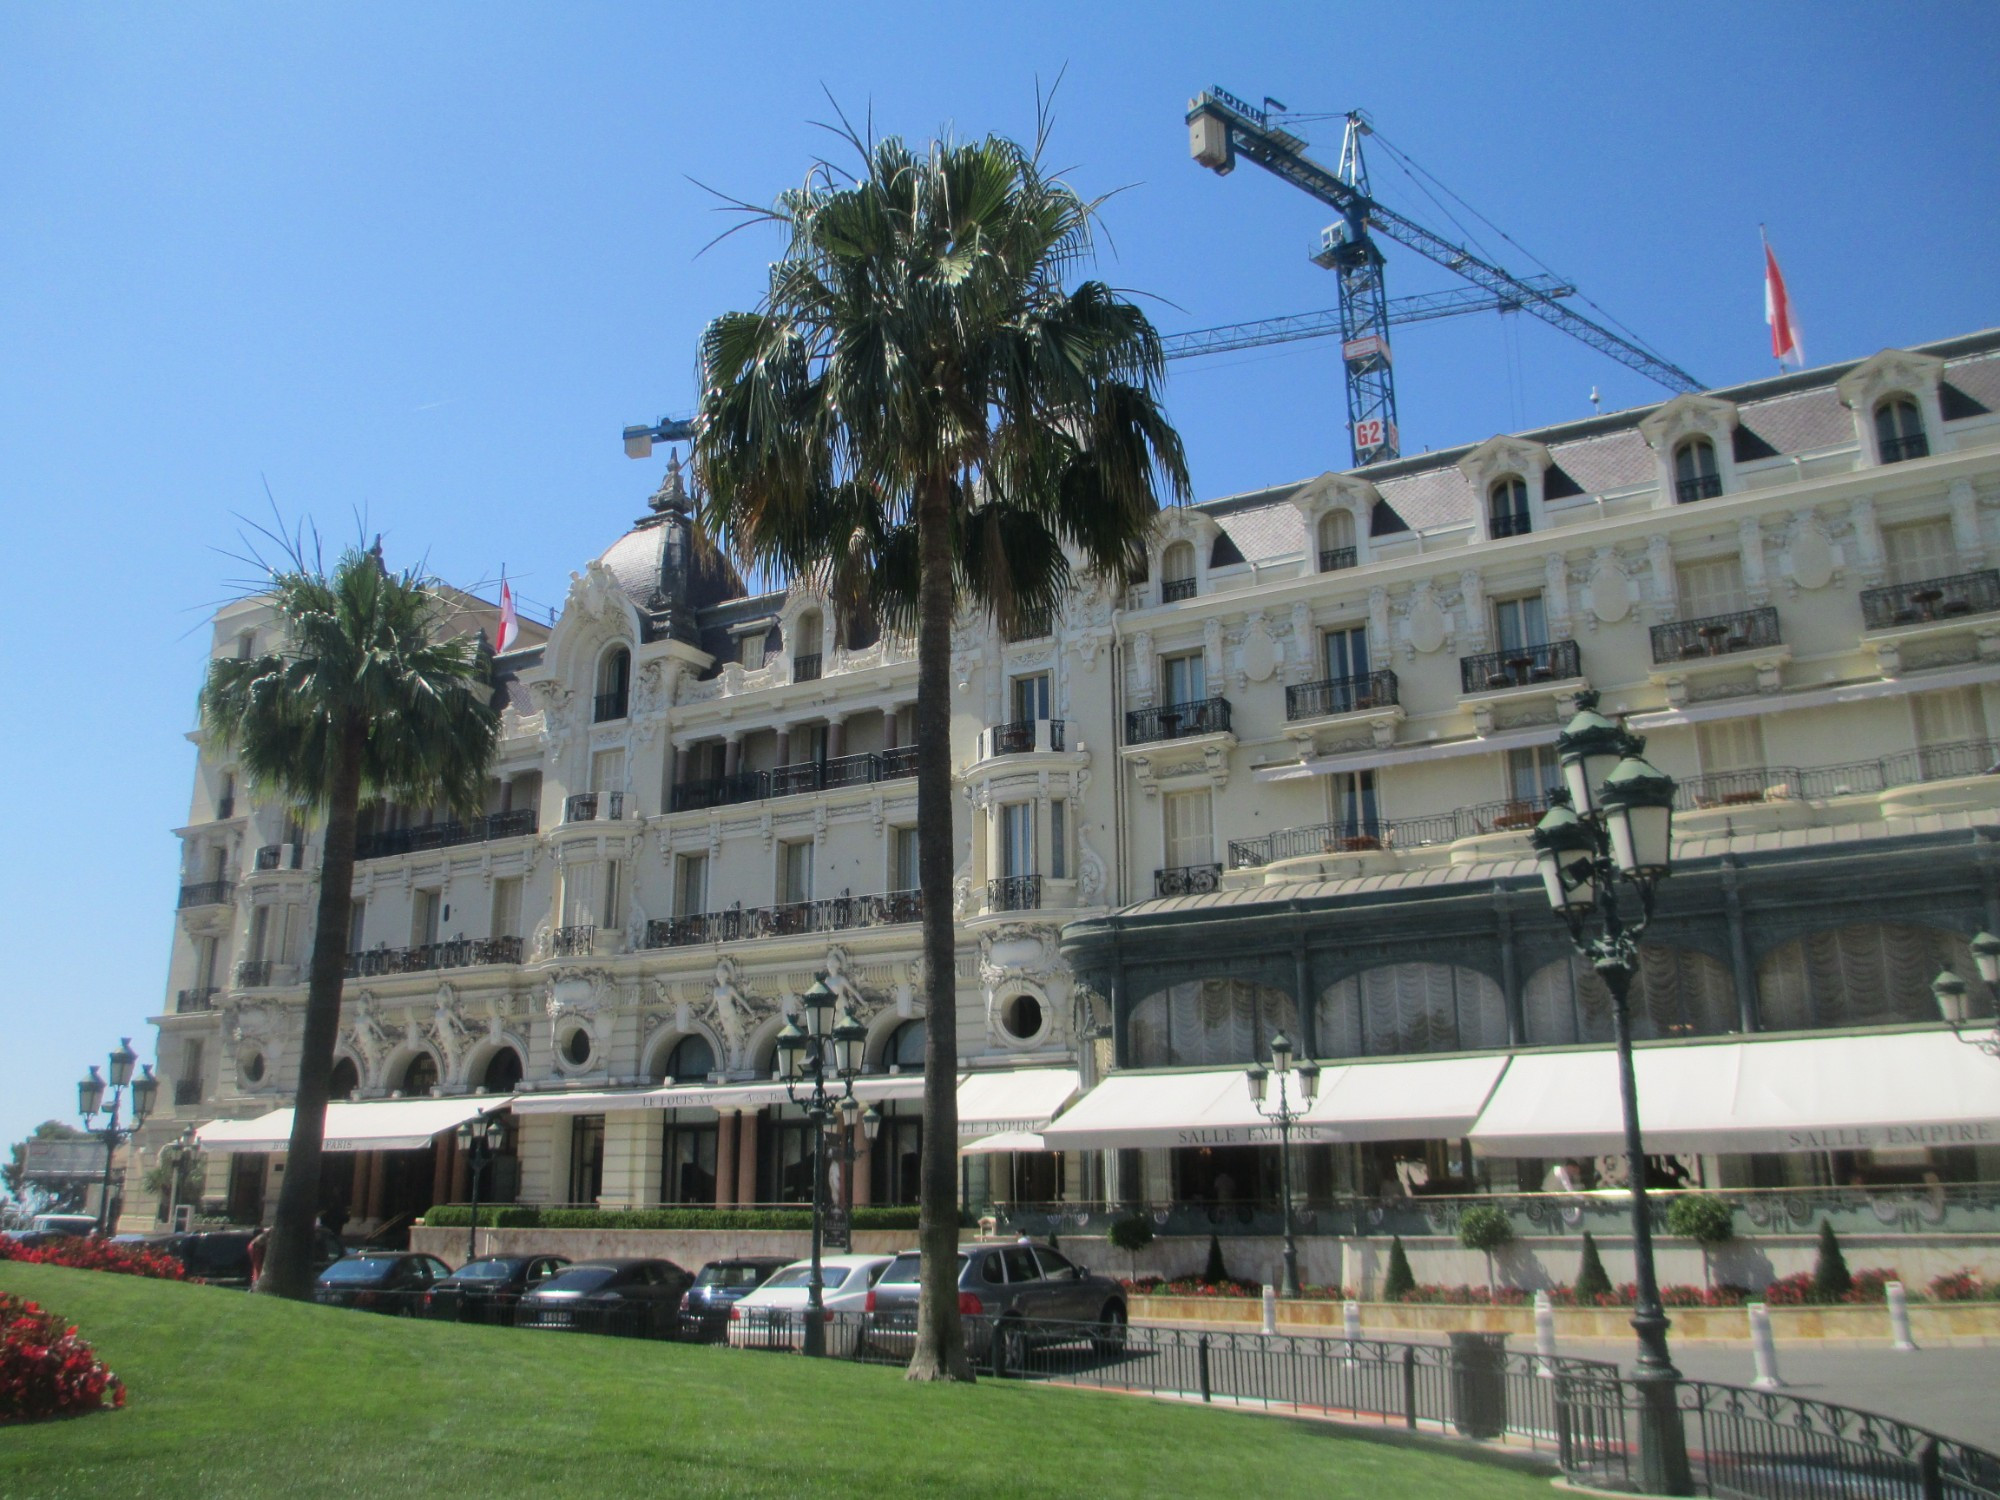 Монте-Карло. Отель де Пари. (24.06.2016)